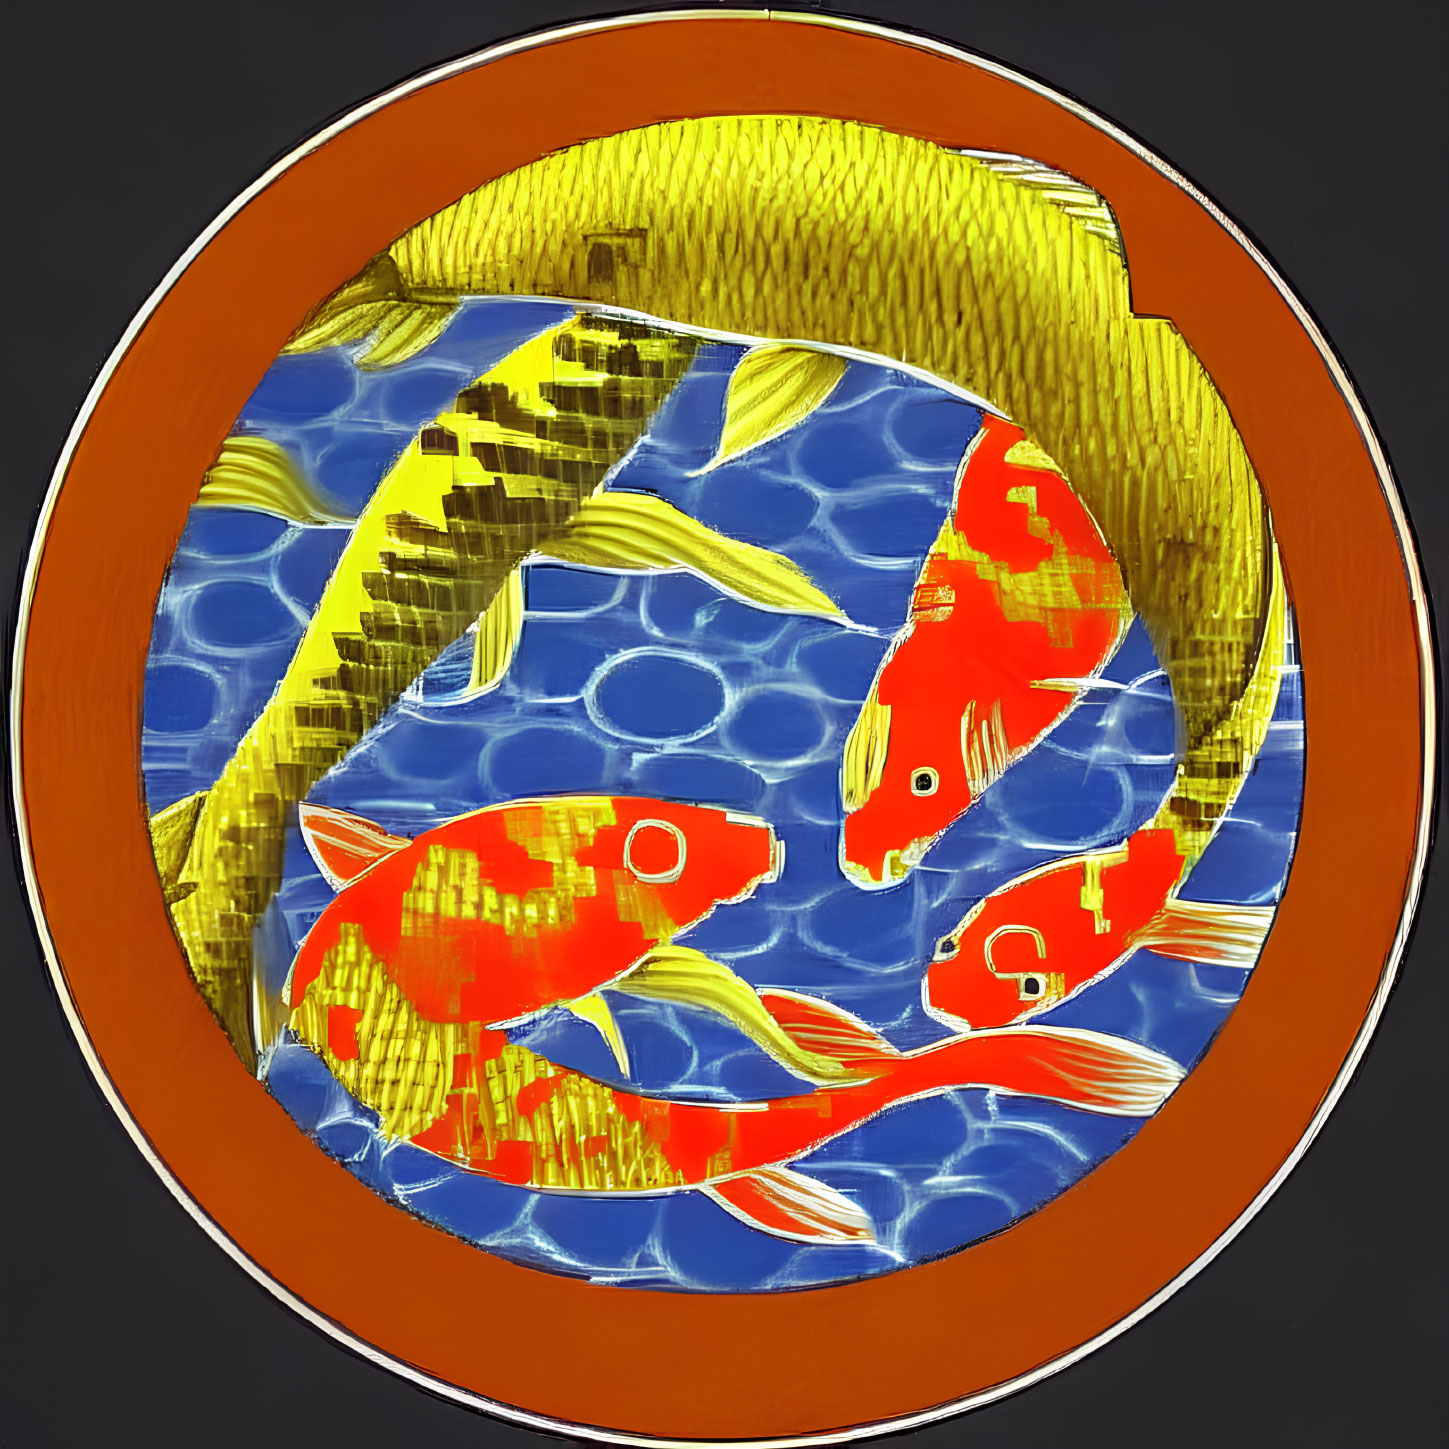 Koi fish yin-yang symbol in circular frame on water background